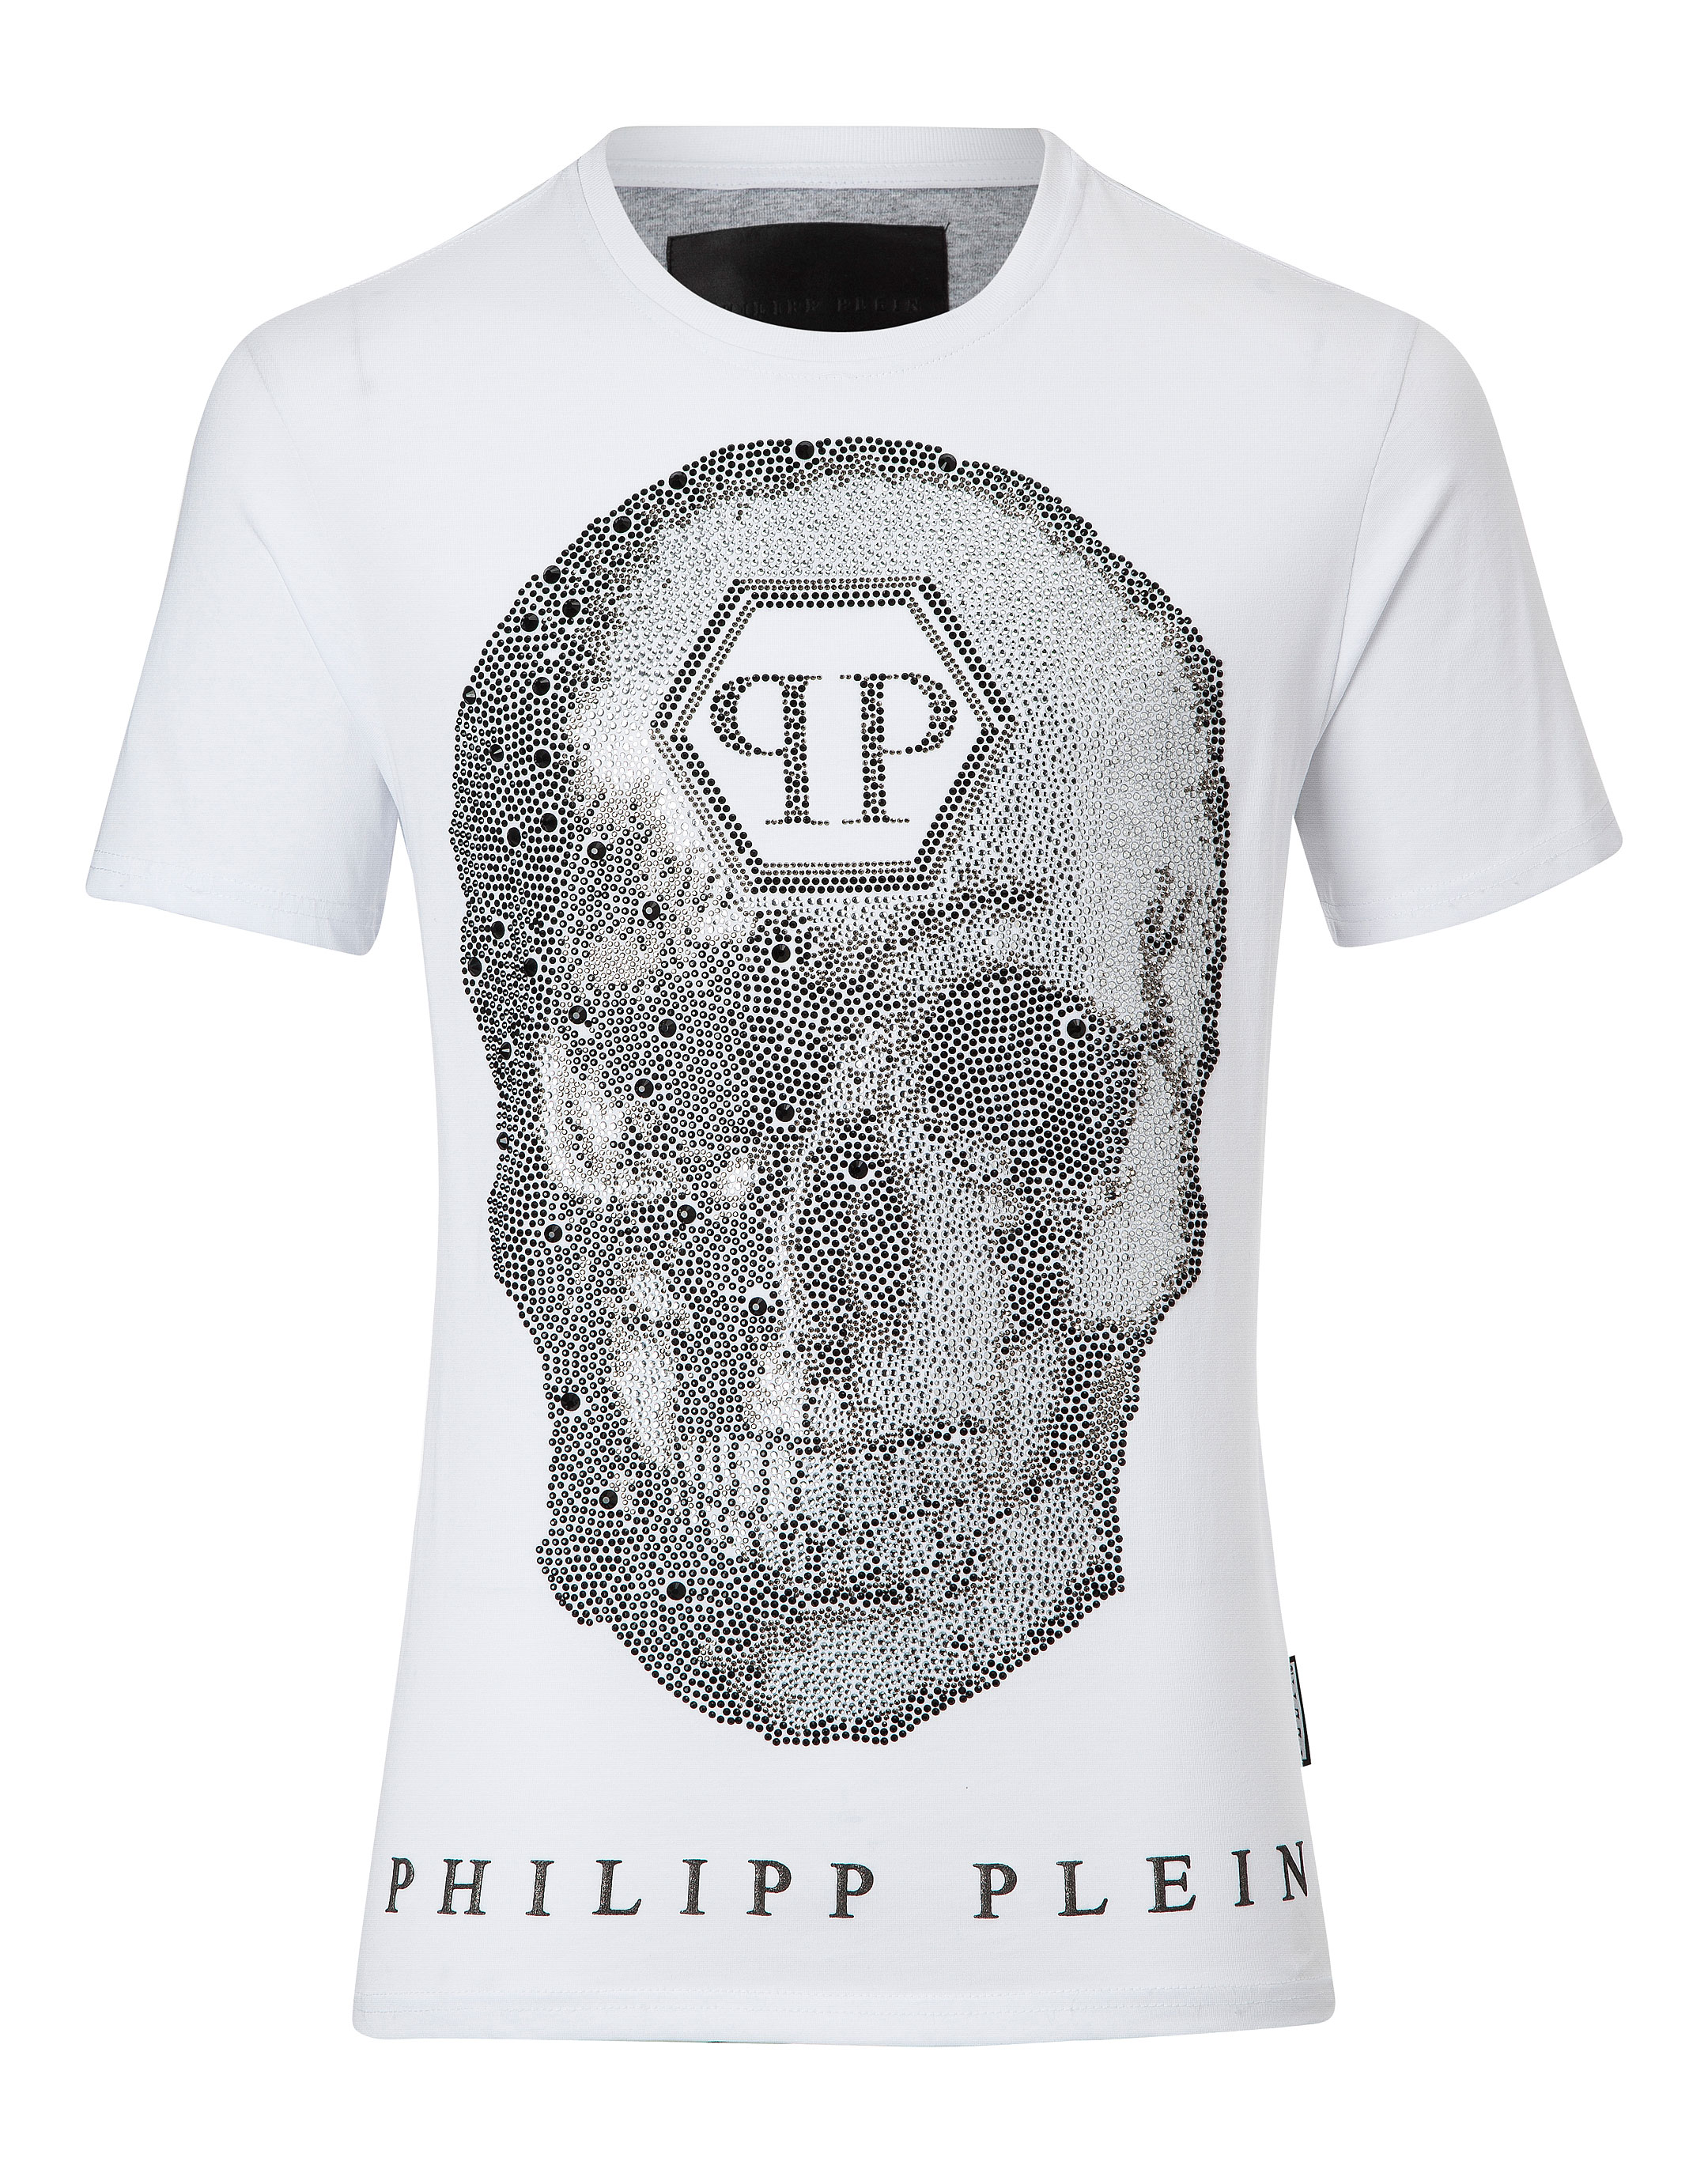 philipp plein shirt price Off 76% - www.gmcanantnag.net